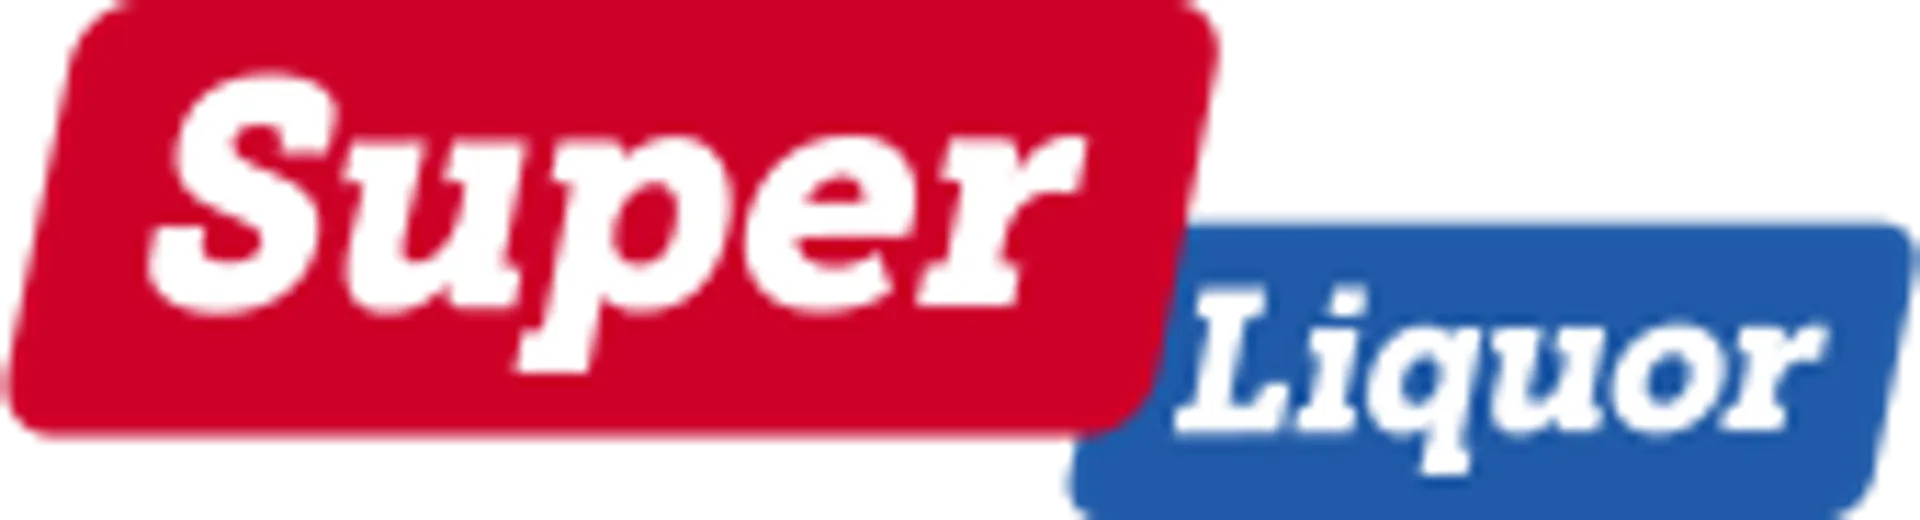 SUPER LIQUOR logo current weekly ad